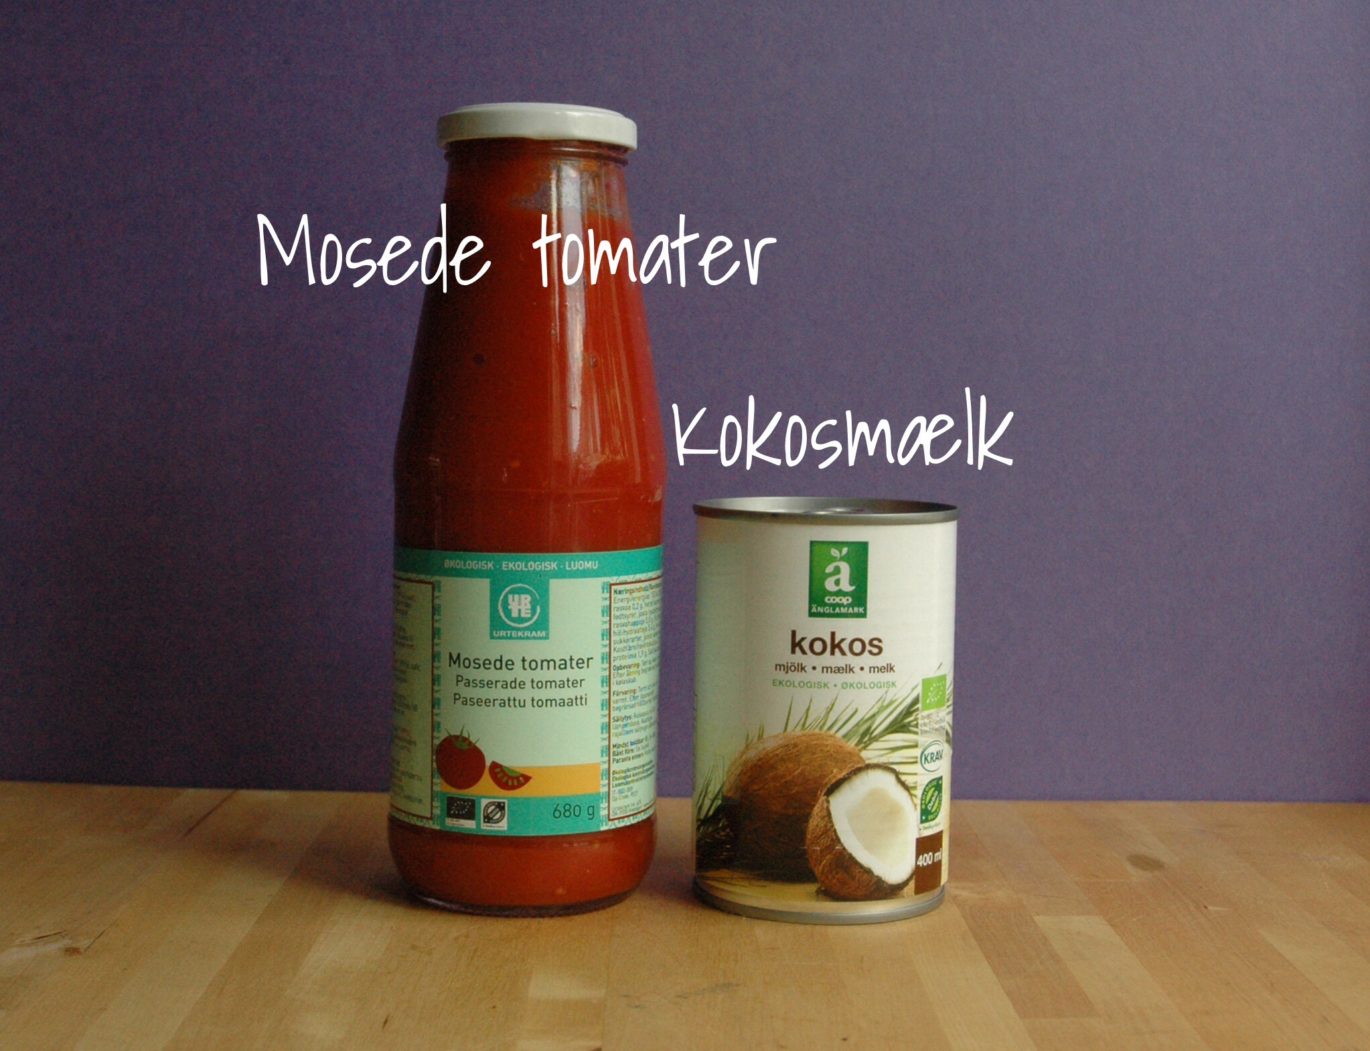 En flaske med mosede tomater samt en dåse kokosmælk begge økologiske og stående på et træbord.